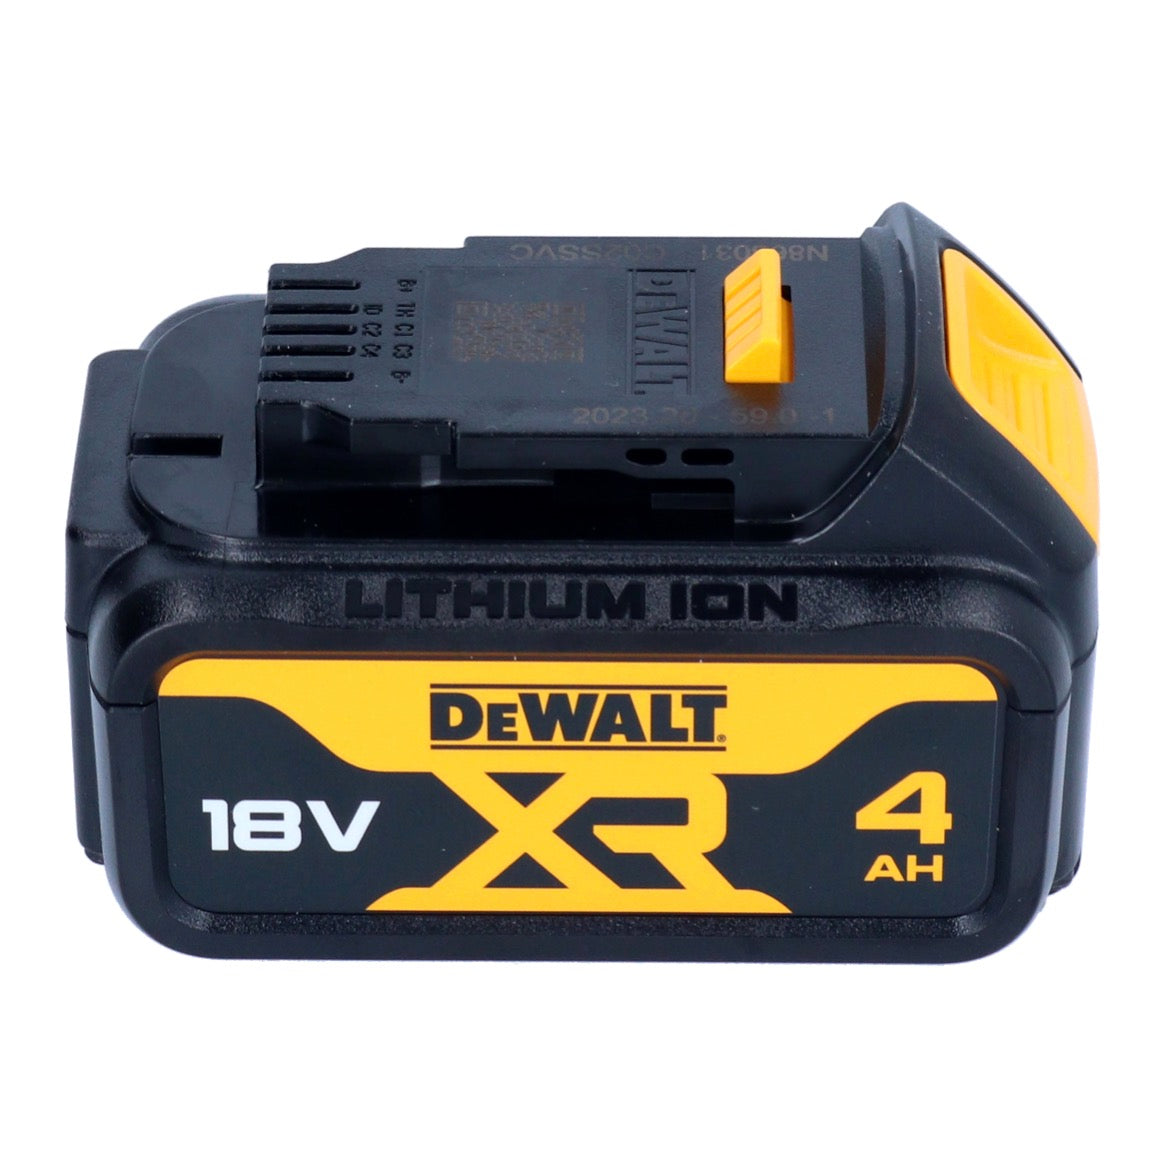 DeWalt DCB182 Batterie 4,0Ah / 4000mAh XR Li-Ion 18V - avec indicateur de charge